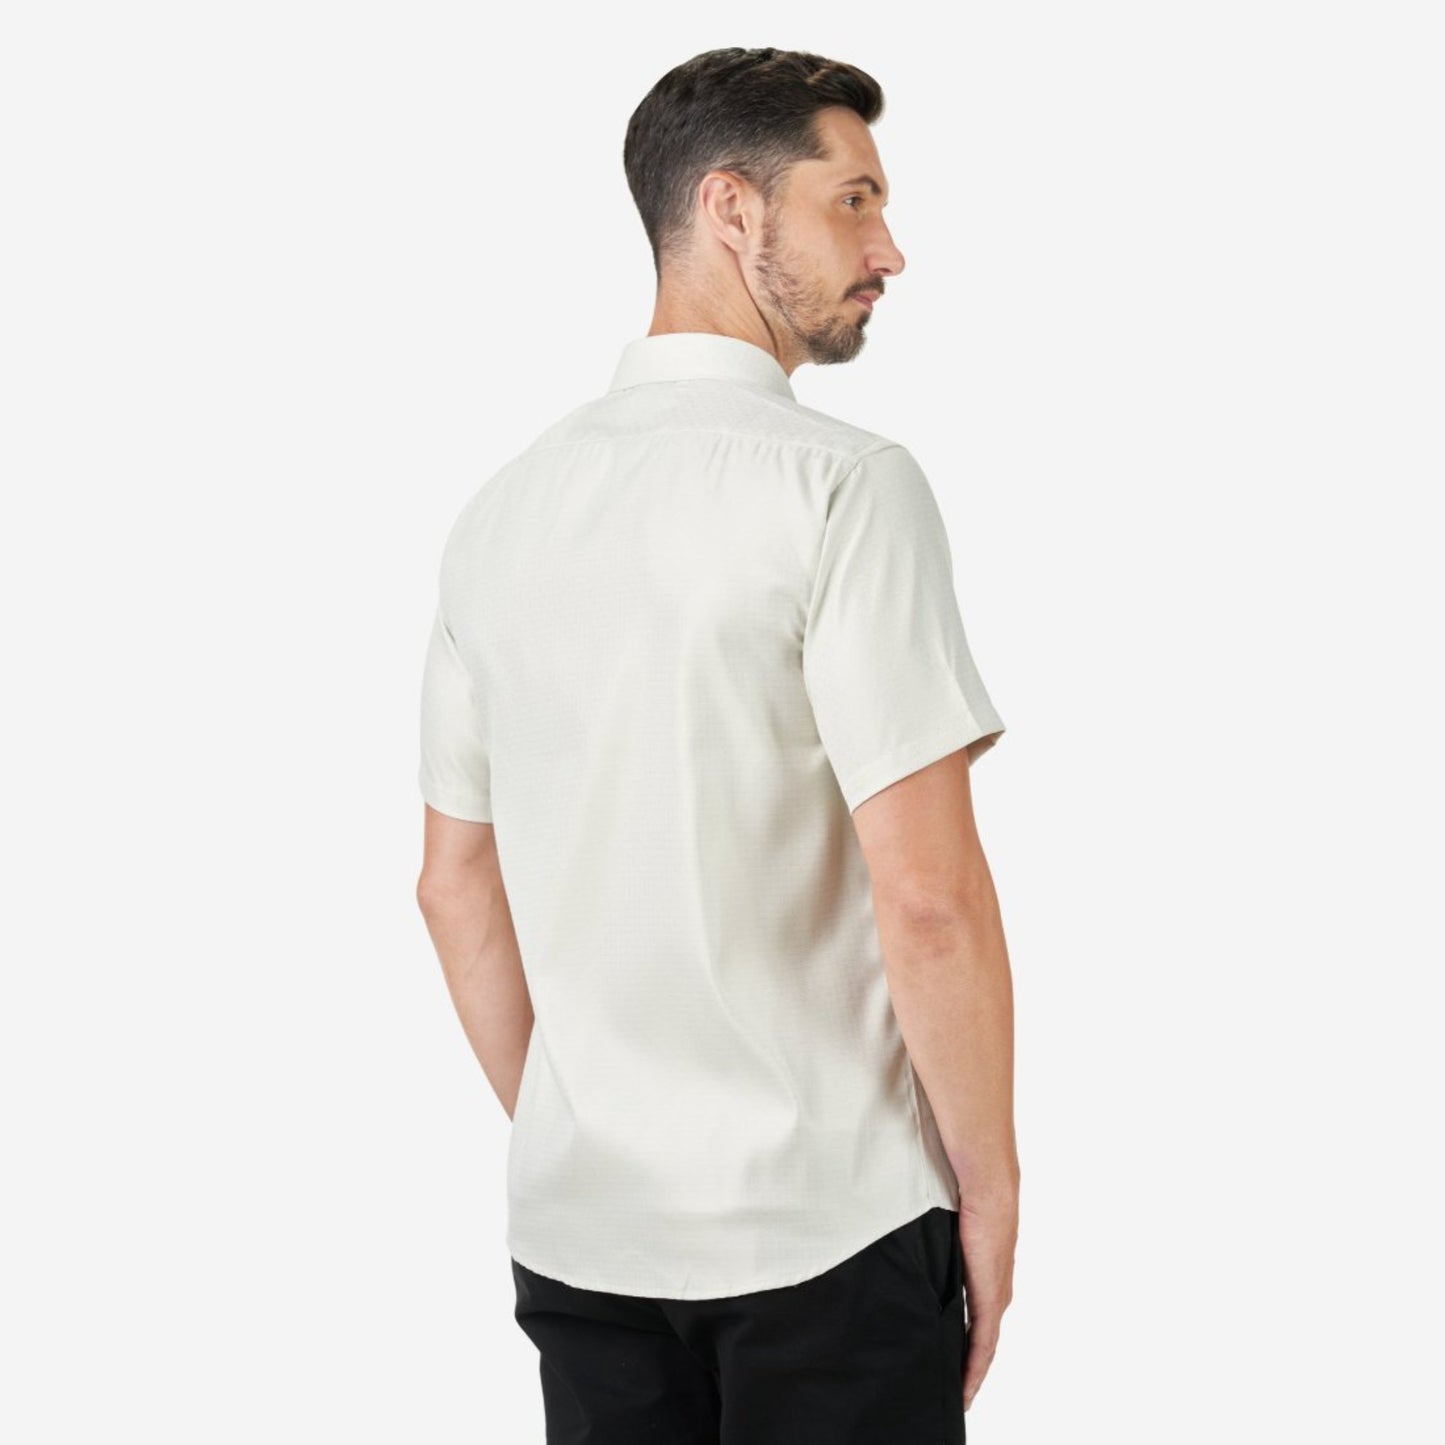 Valentino Rudy Italy Men's Short Sleeve Casual Shirt